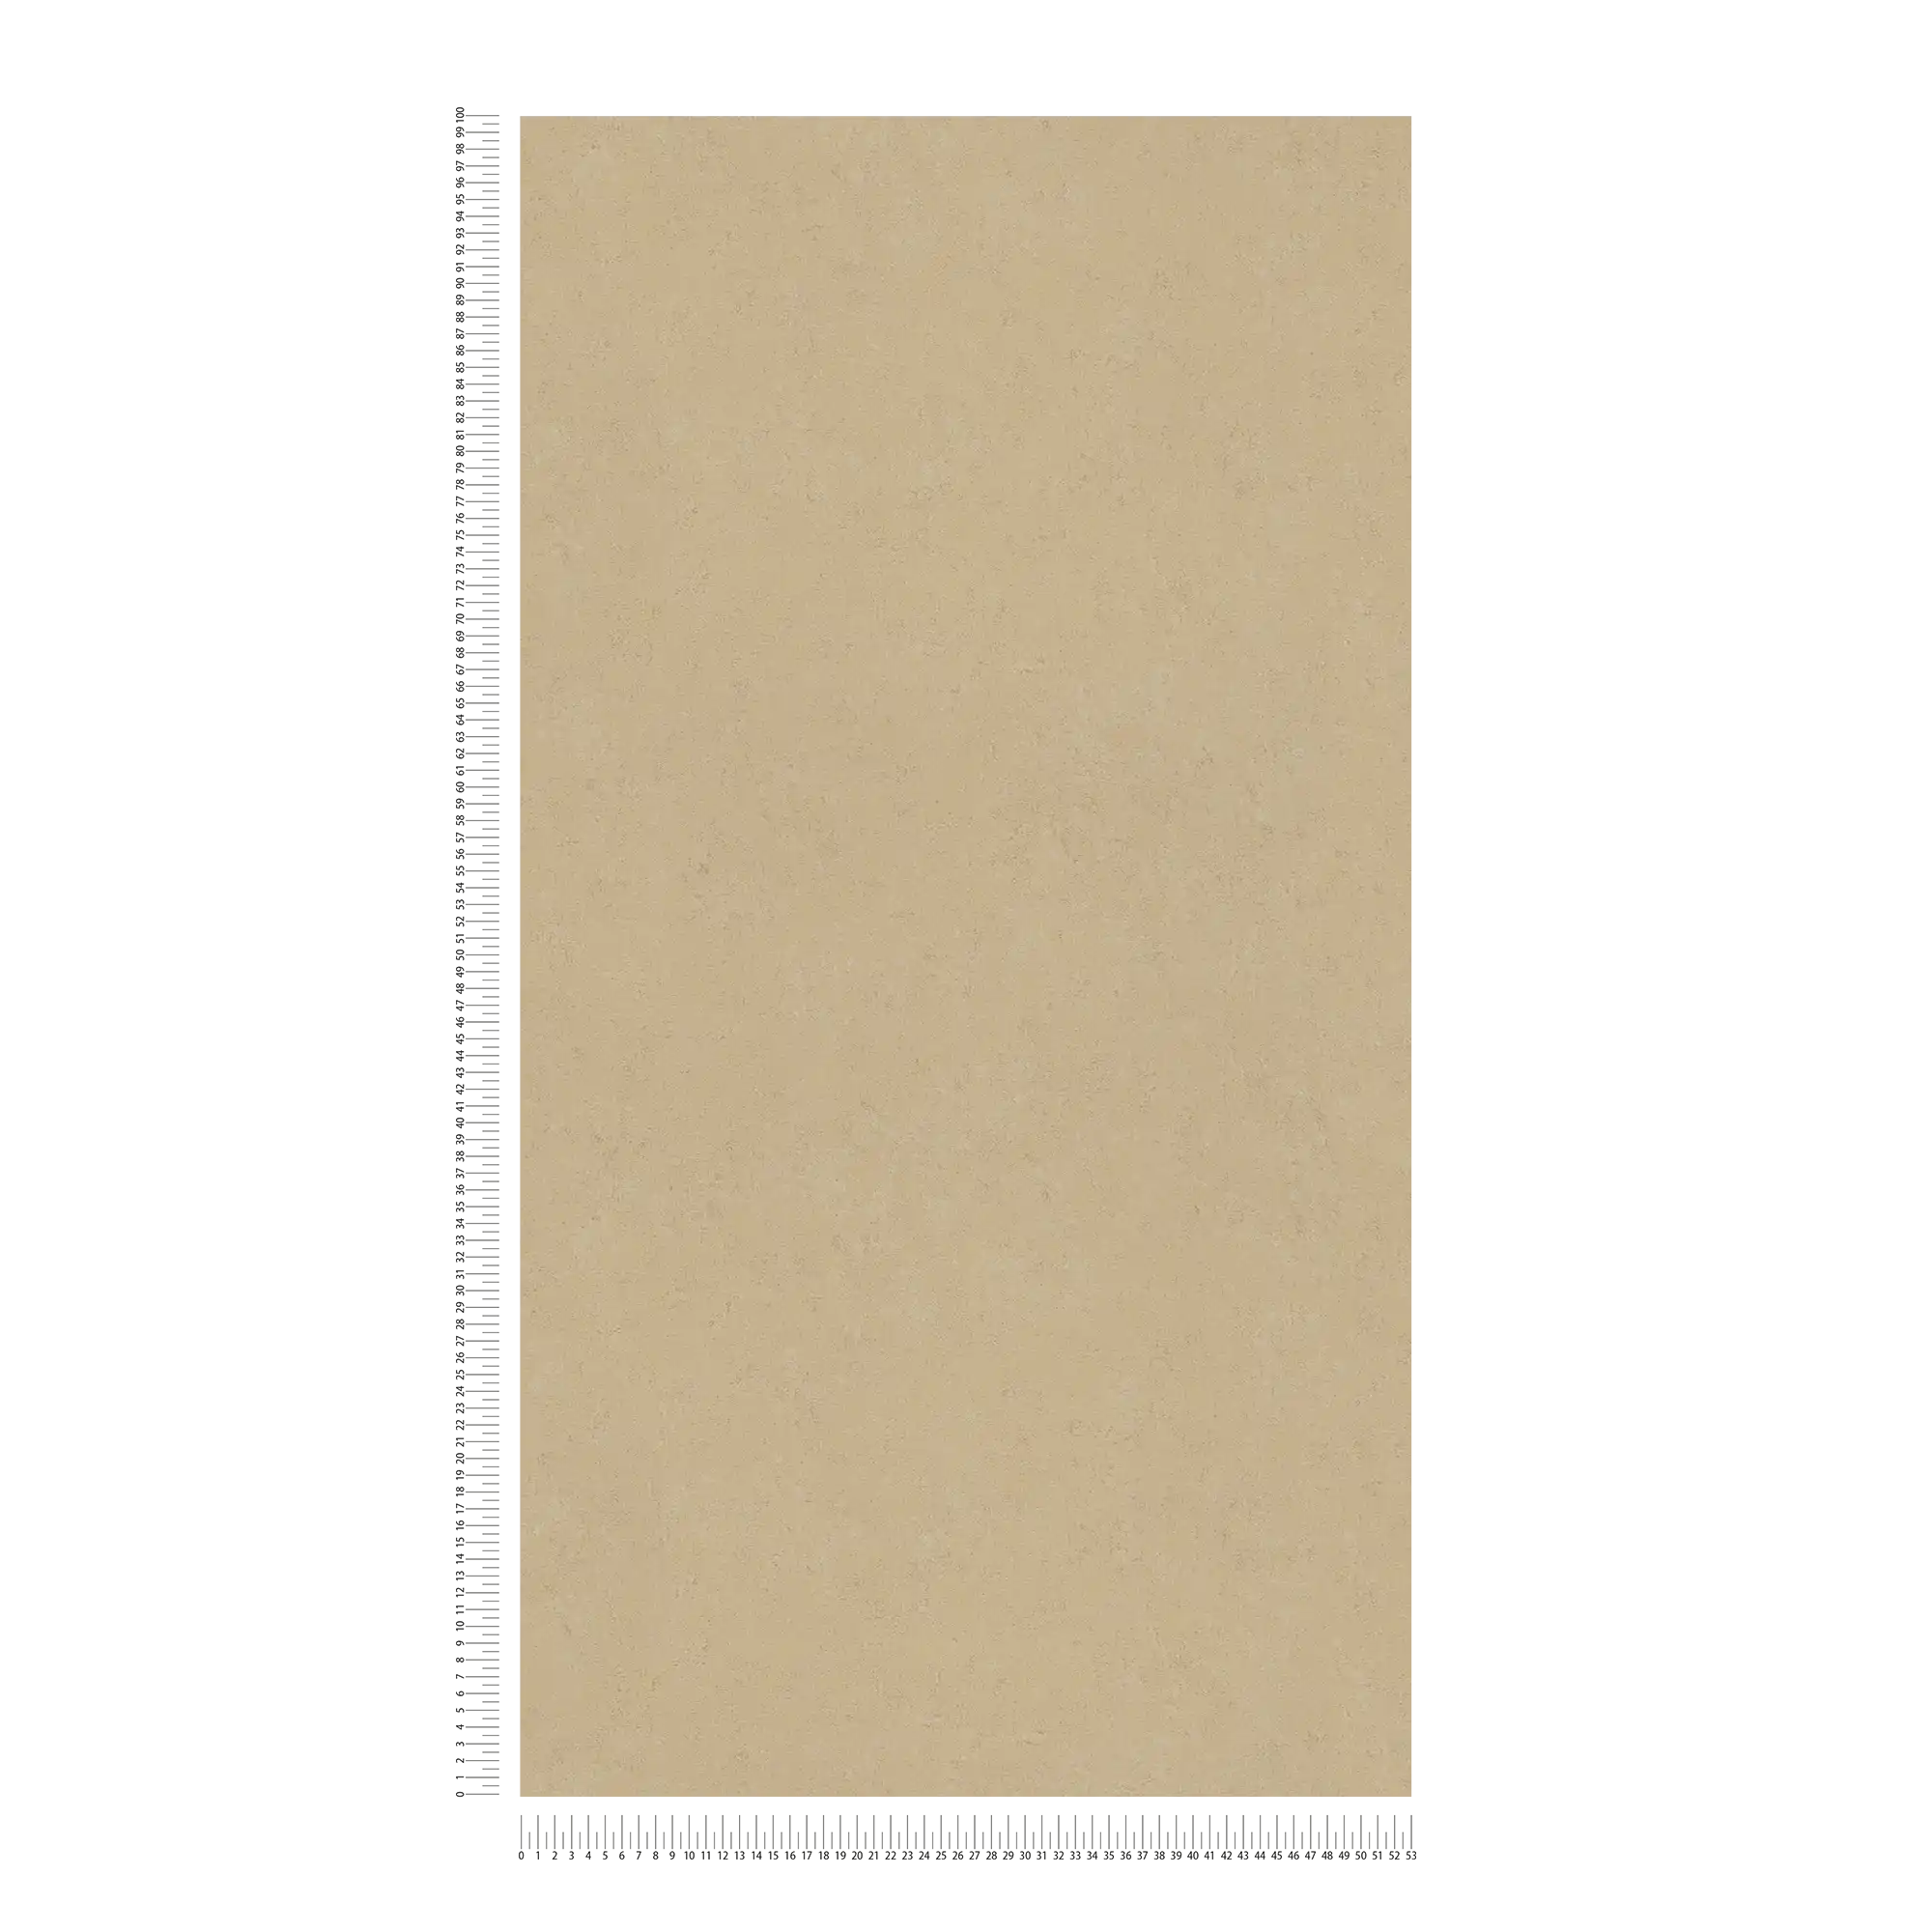             Carta da parati liscia beige con disegno strutturato
        